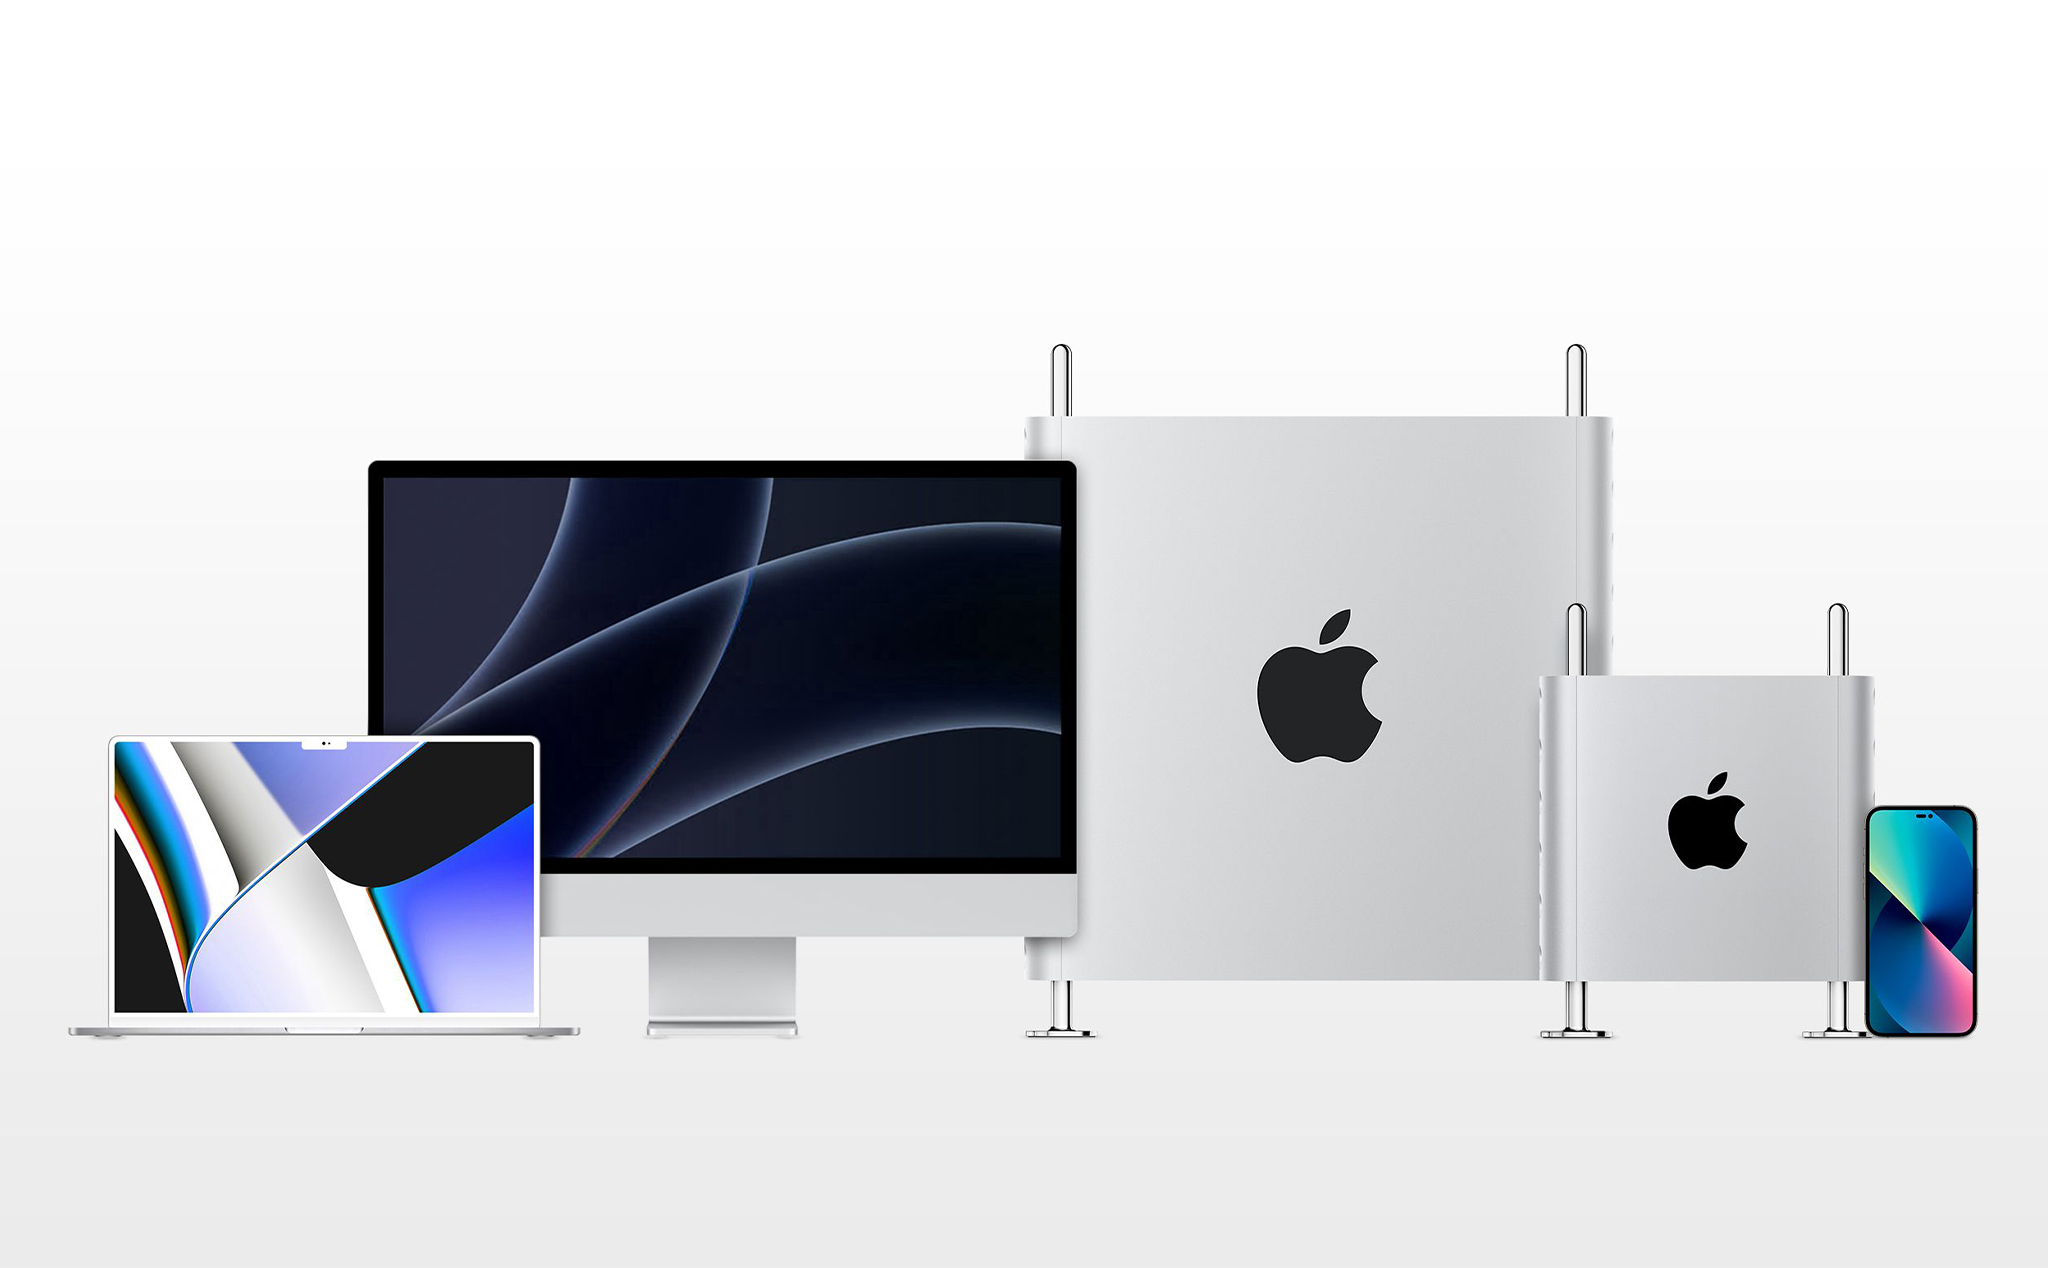 Lộ một loạt mã nội bộ của các thiết bị Apple: 3 máy Mac, 6 chiếc iPad và 9 chiếc Apple Watch?